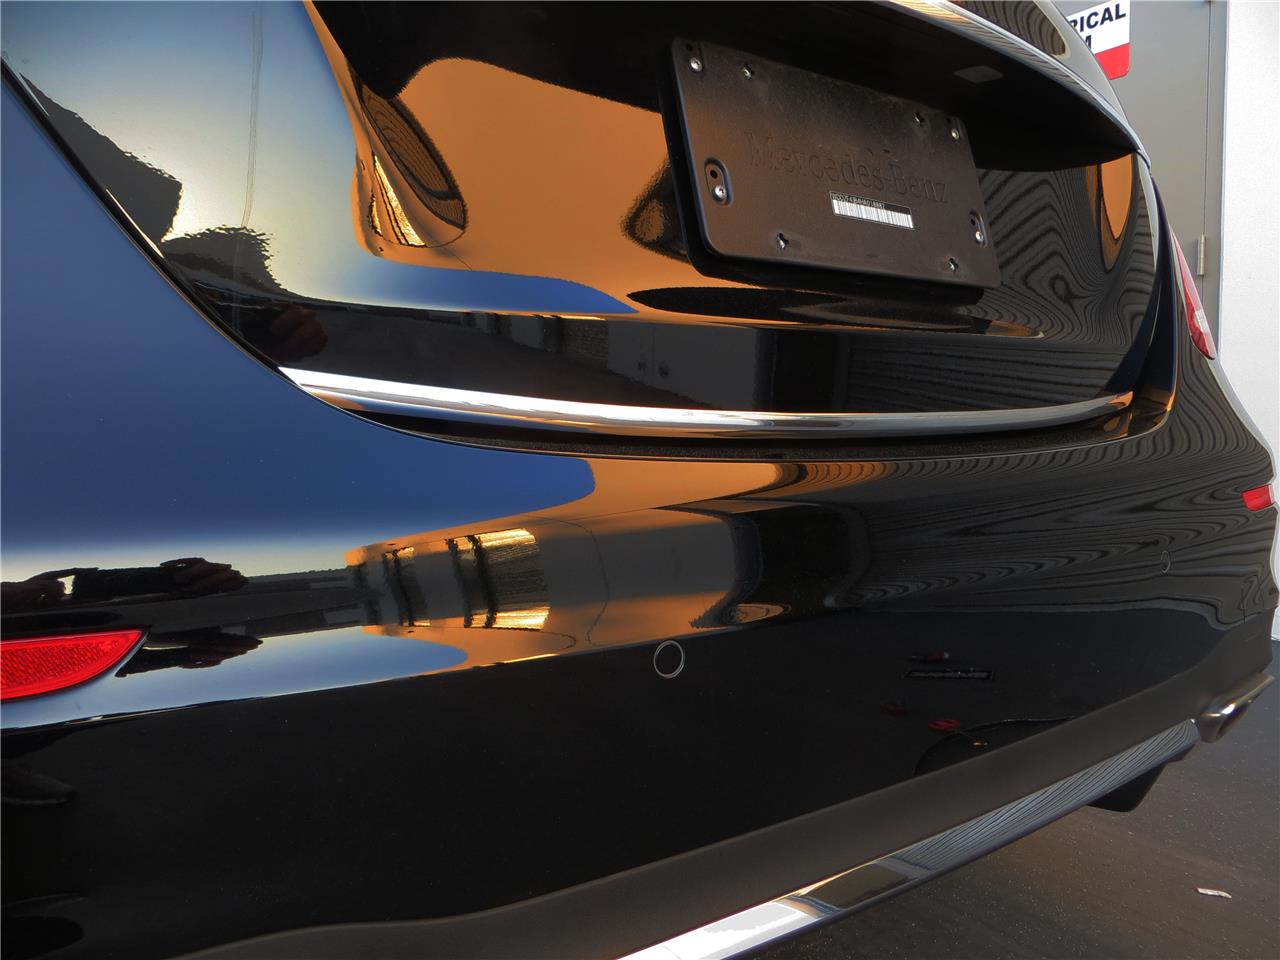 Chrome TRUNK TRIM Tailgate Molding Kit for mercedes models 2012-2018